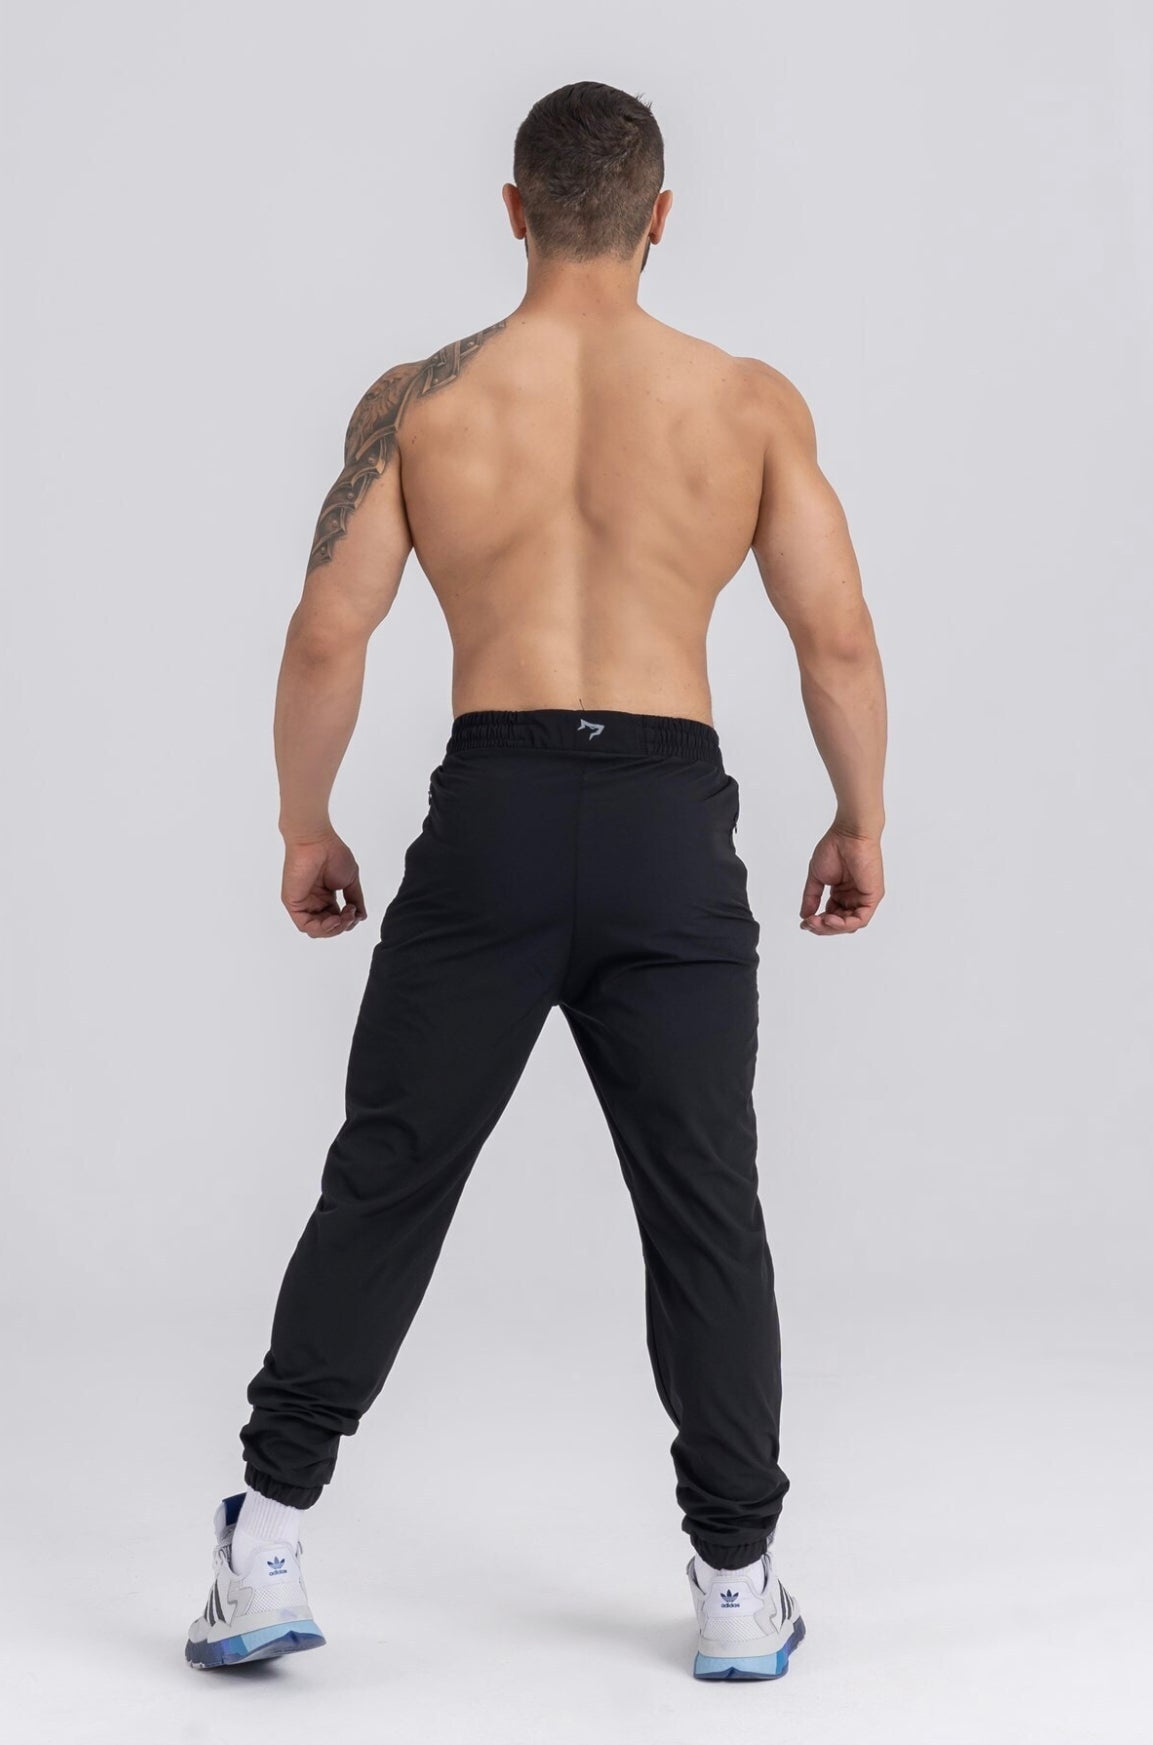 Gymwolves Men's Sportswear Black Workout Pants I Energy Series